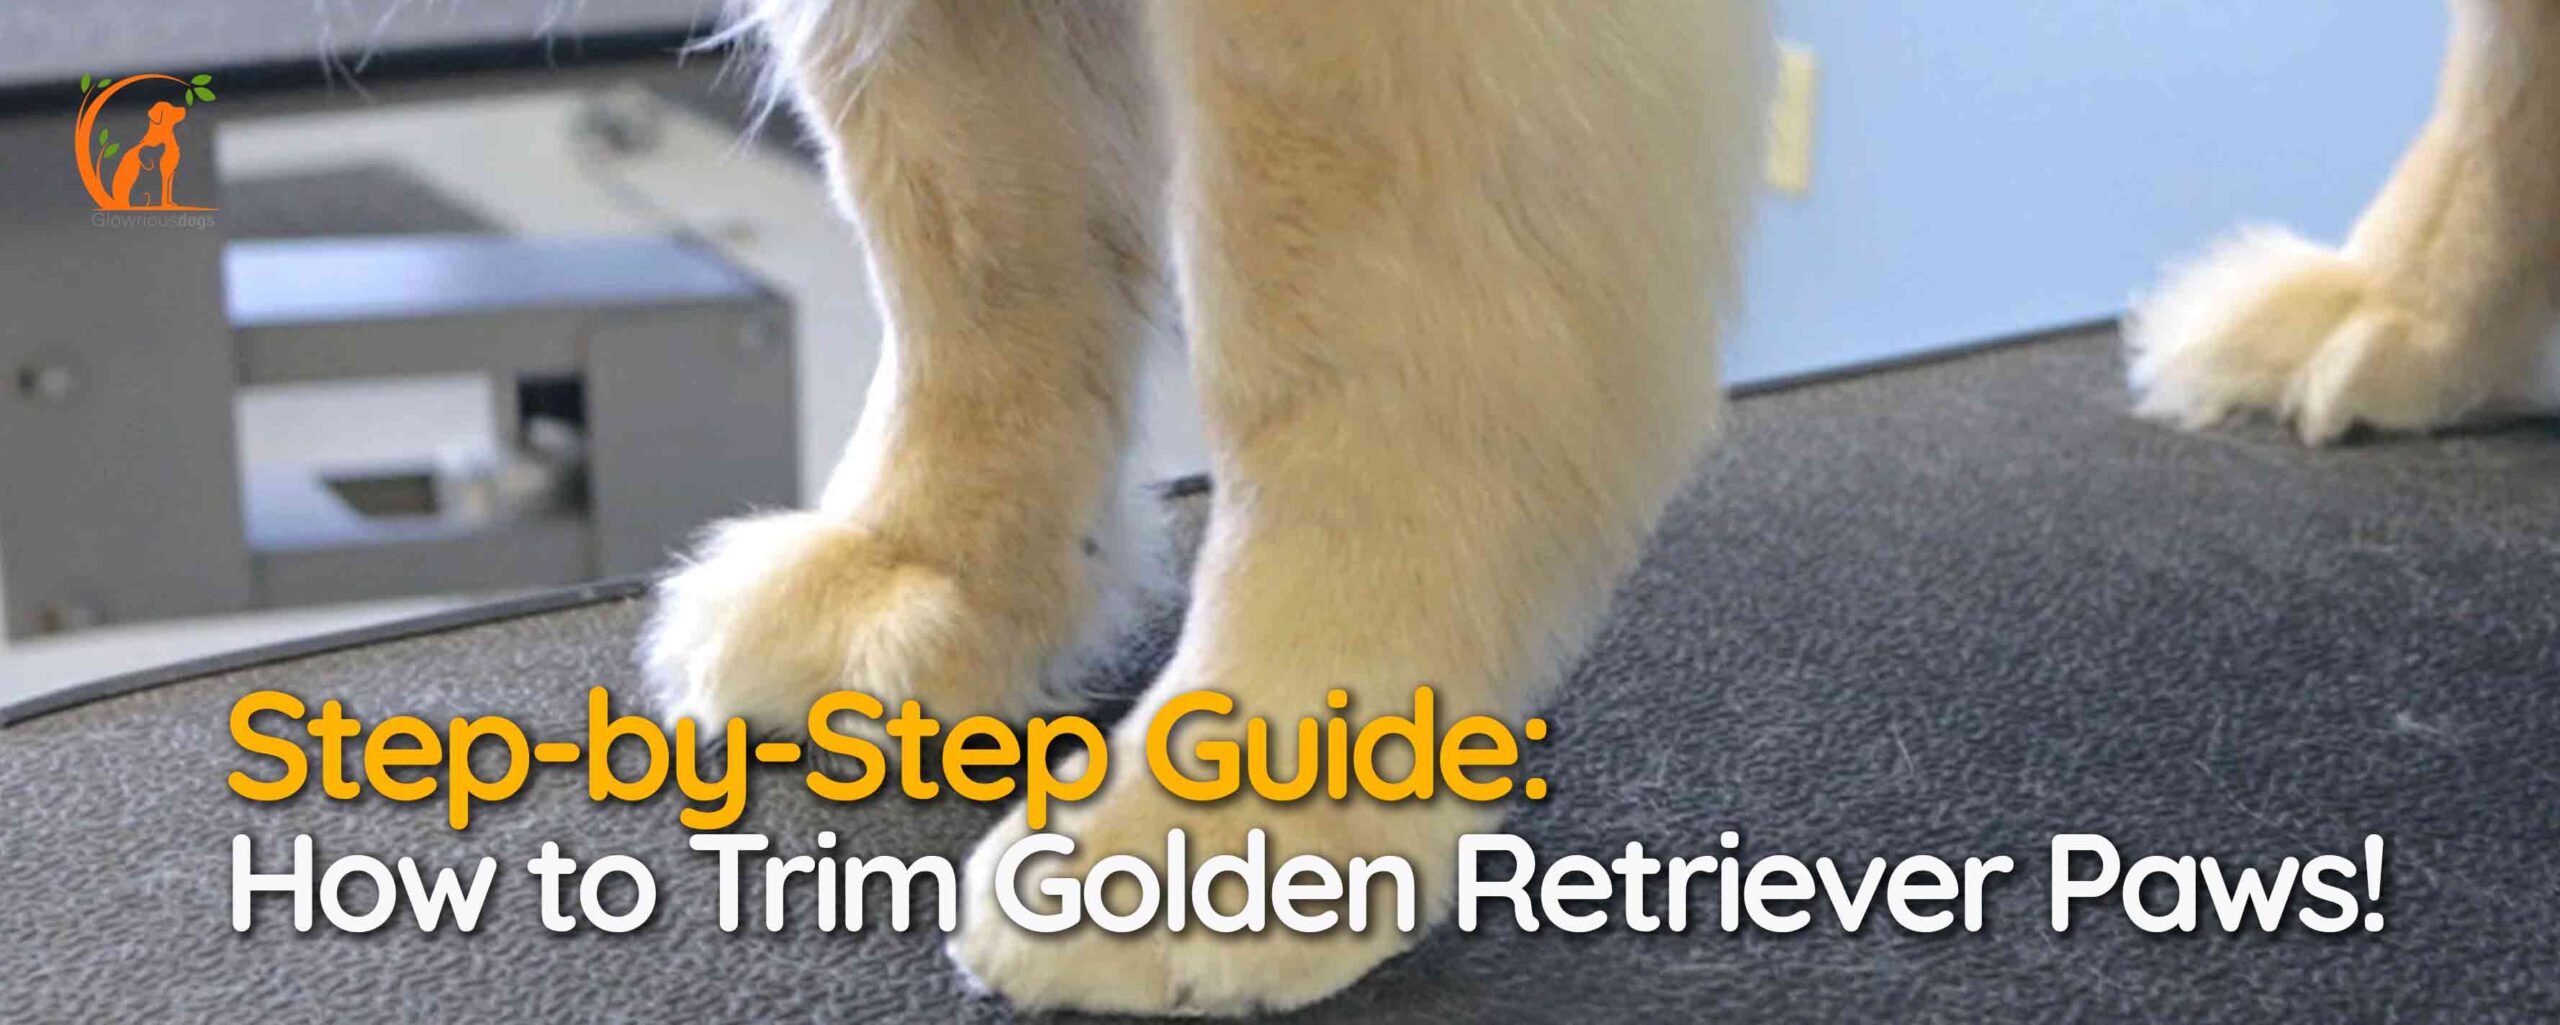 Step-by-Step Guide: How to Trim Golden Retriever Paws!